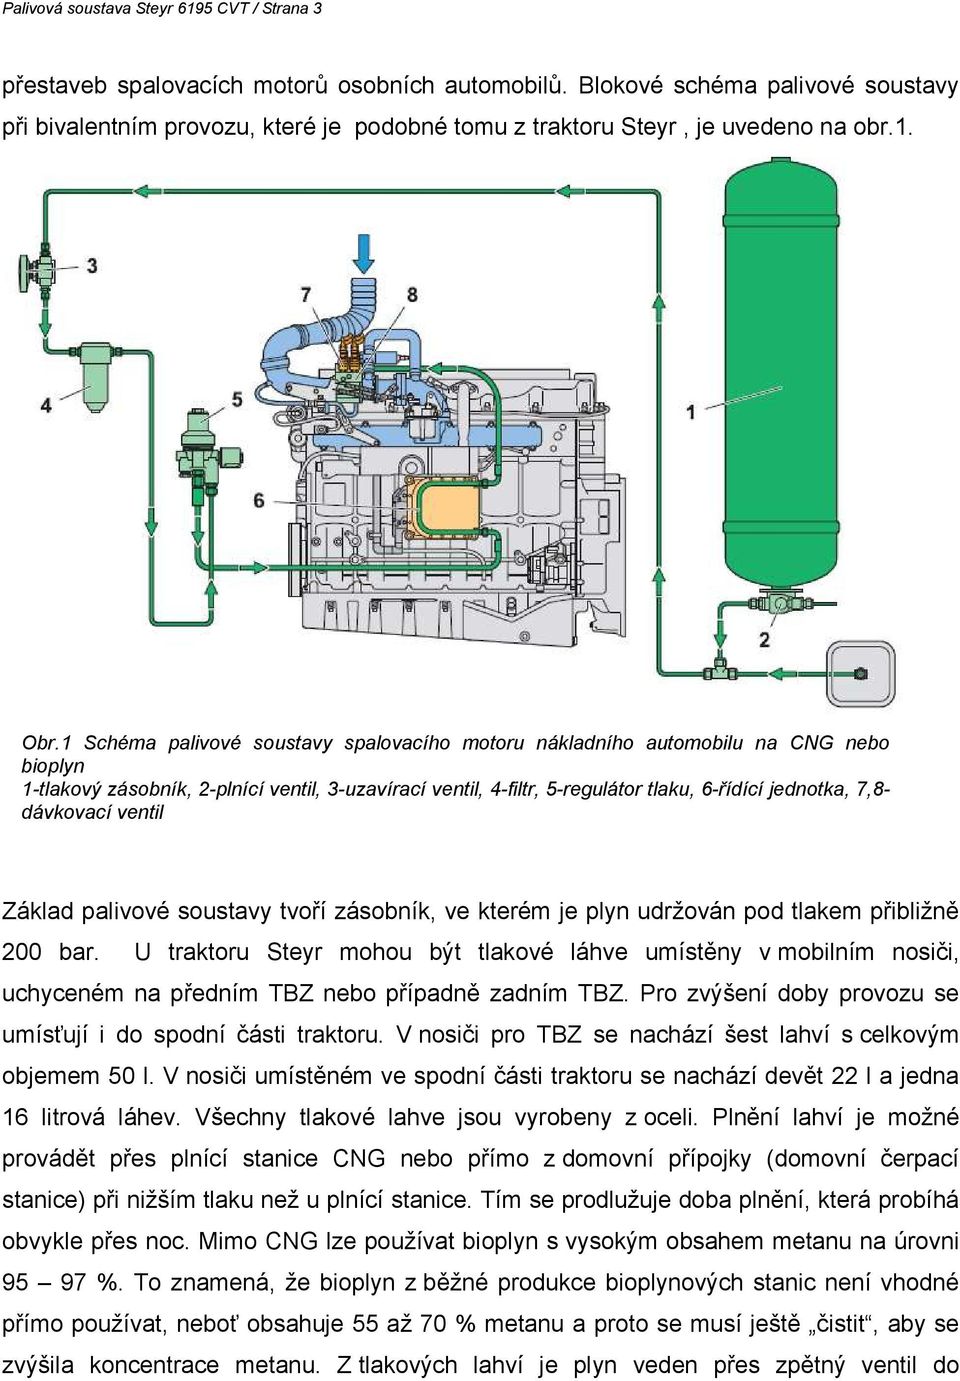 Palivová soustava Steyr 6195 CVT - PDF Free Download